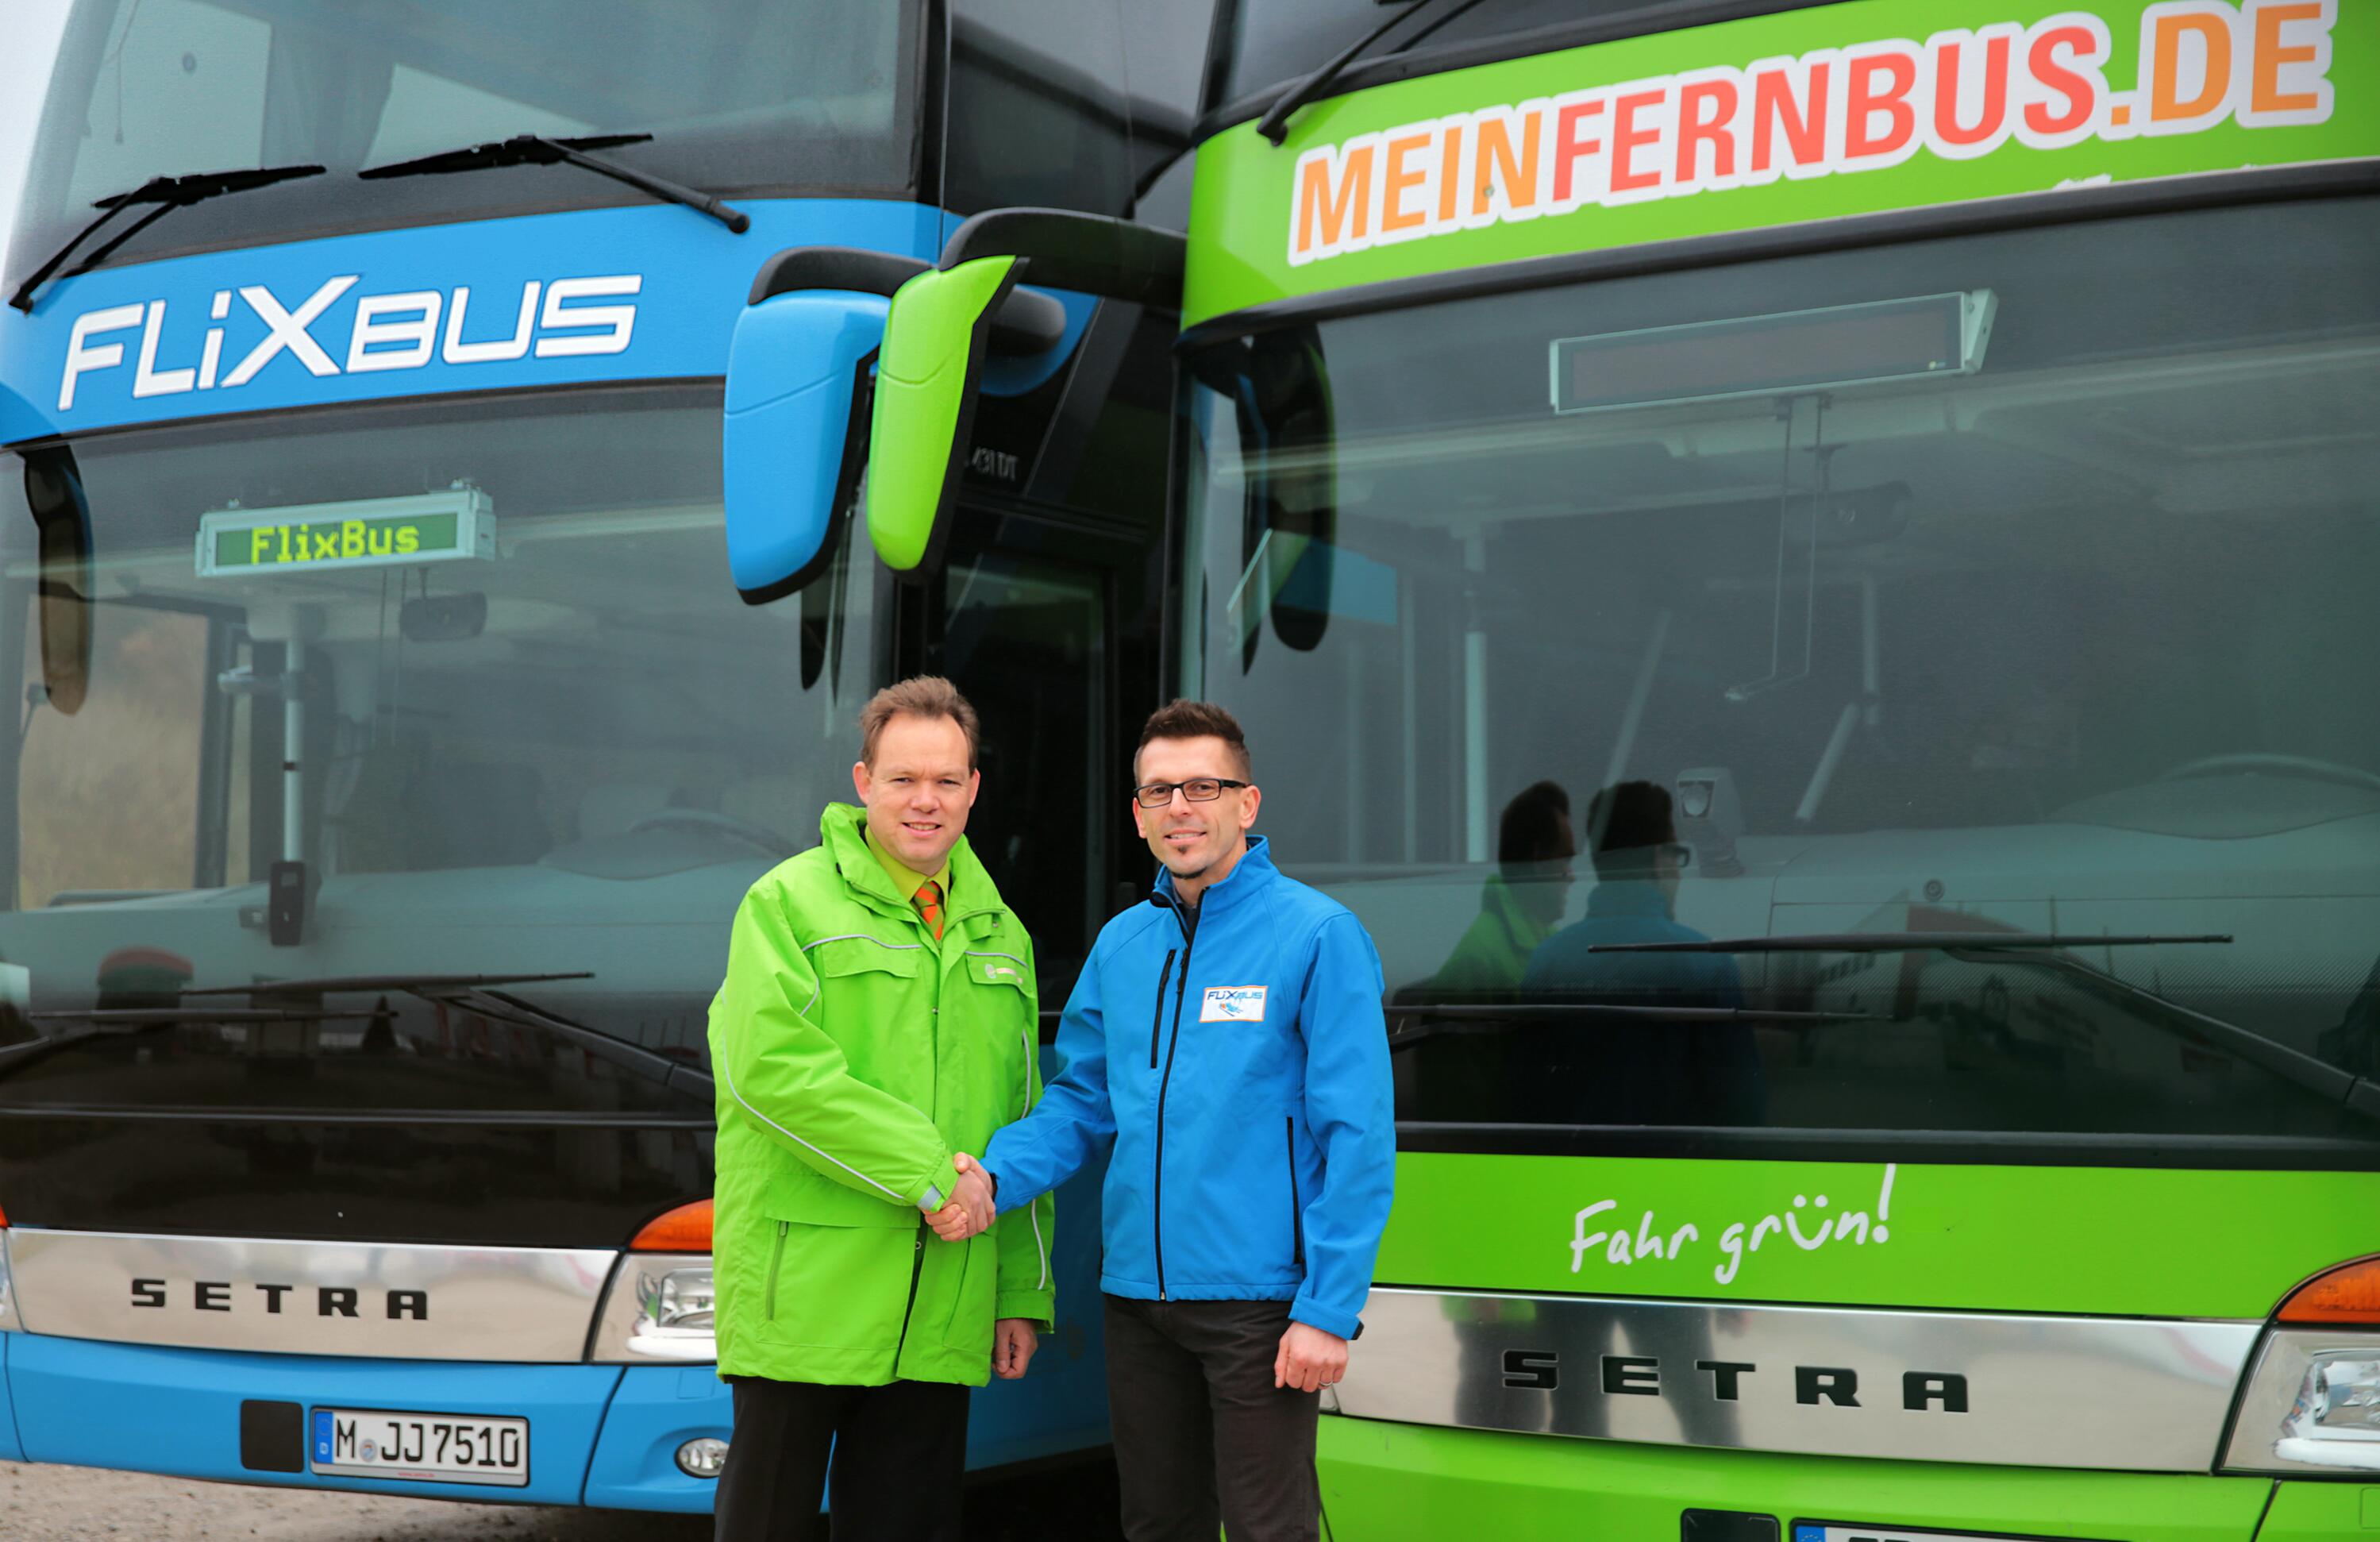 MeinFernbus und FlixBus: Fusion auf dem Fernbusmarkt